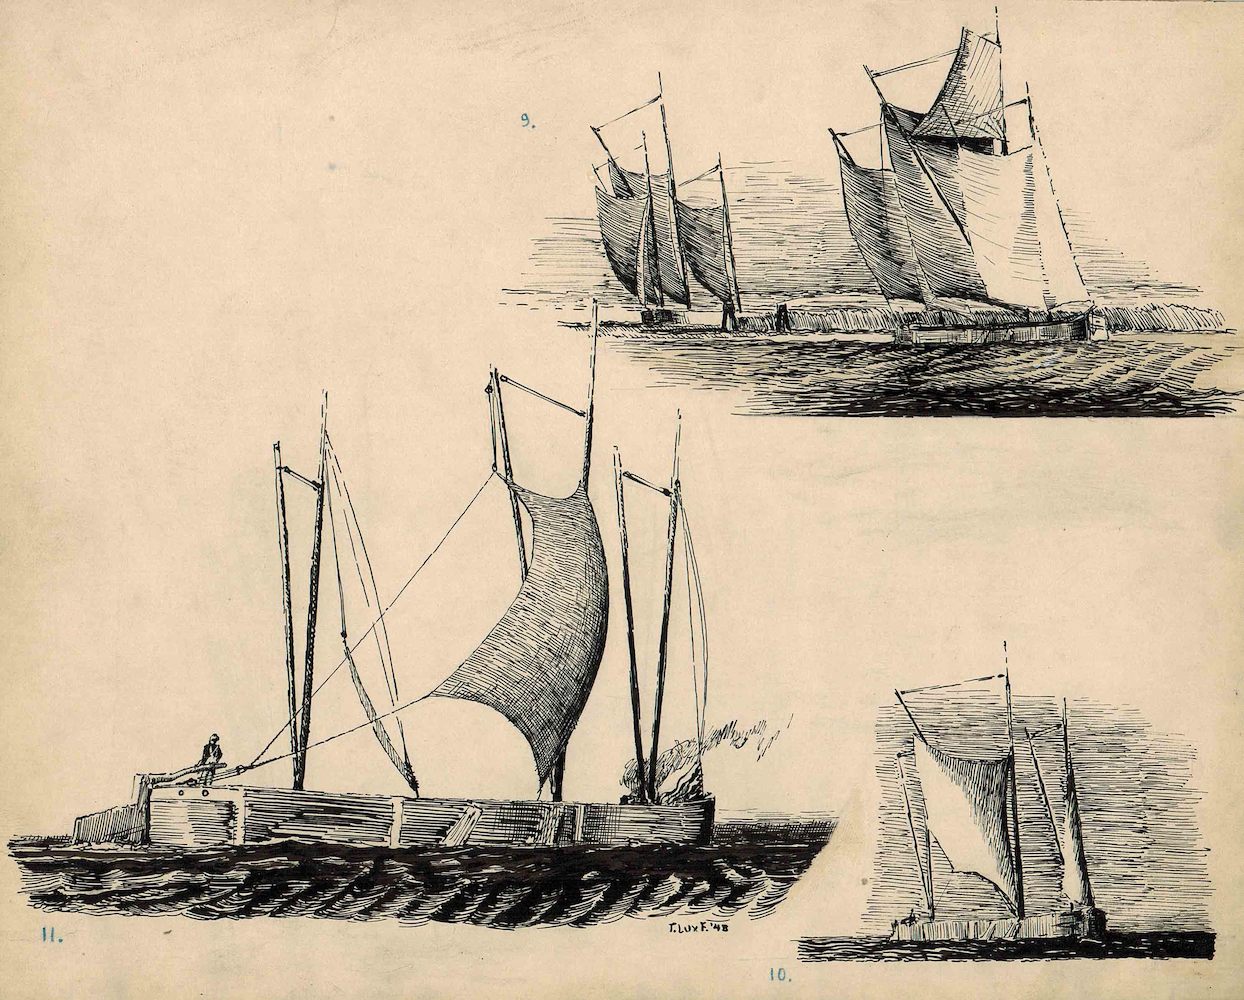 Three views of Sailboats